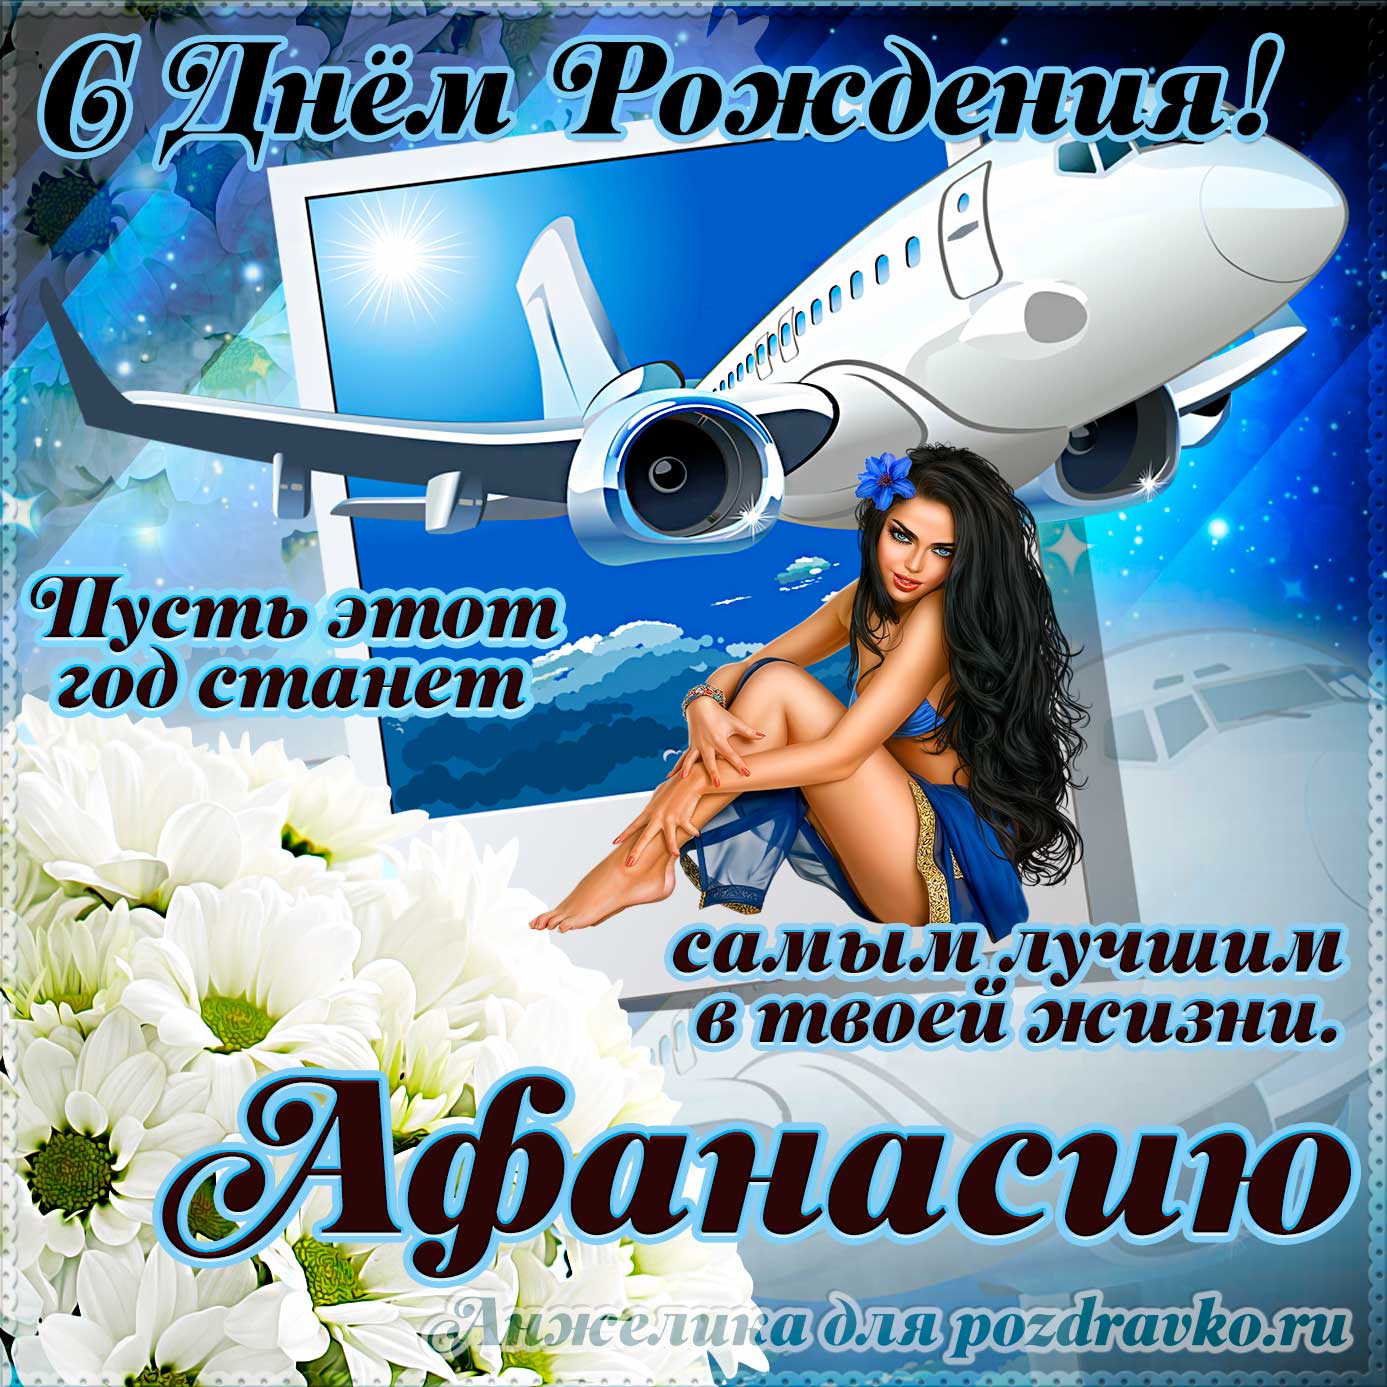 Открытка - Афанасию на день рождения с красивым пожеланием самолетом и девушкой. Скачать бесплатно или отправить картинку.